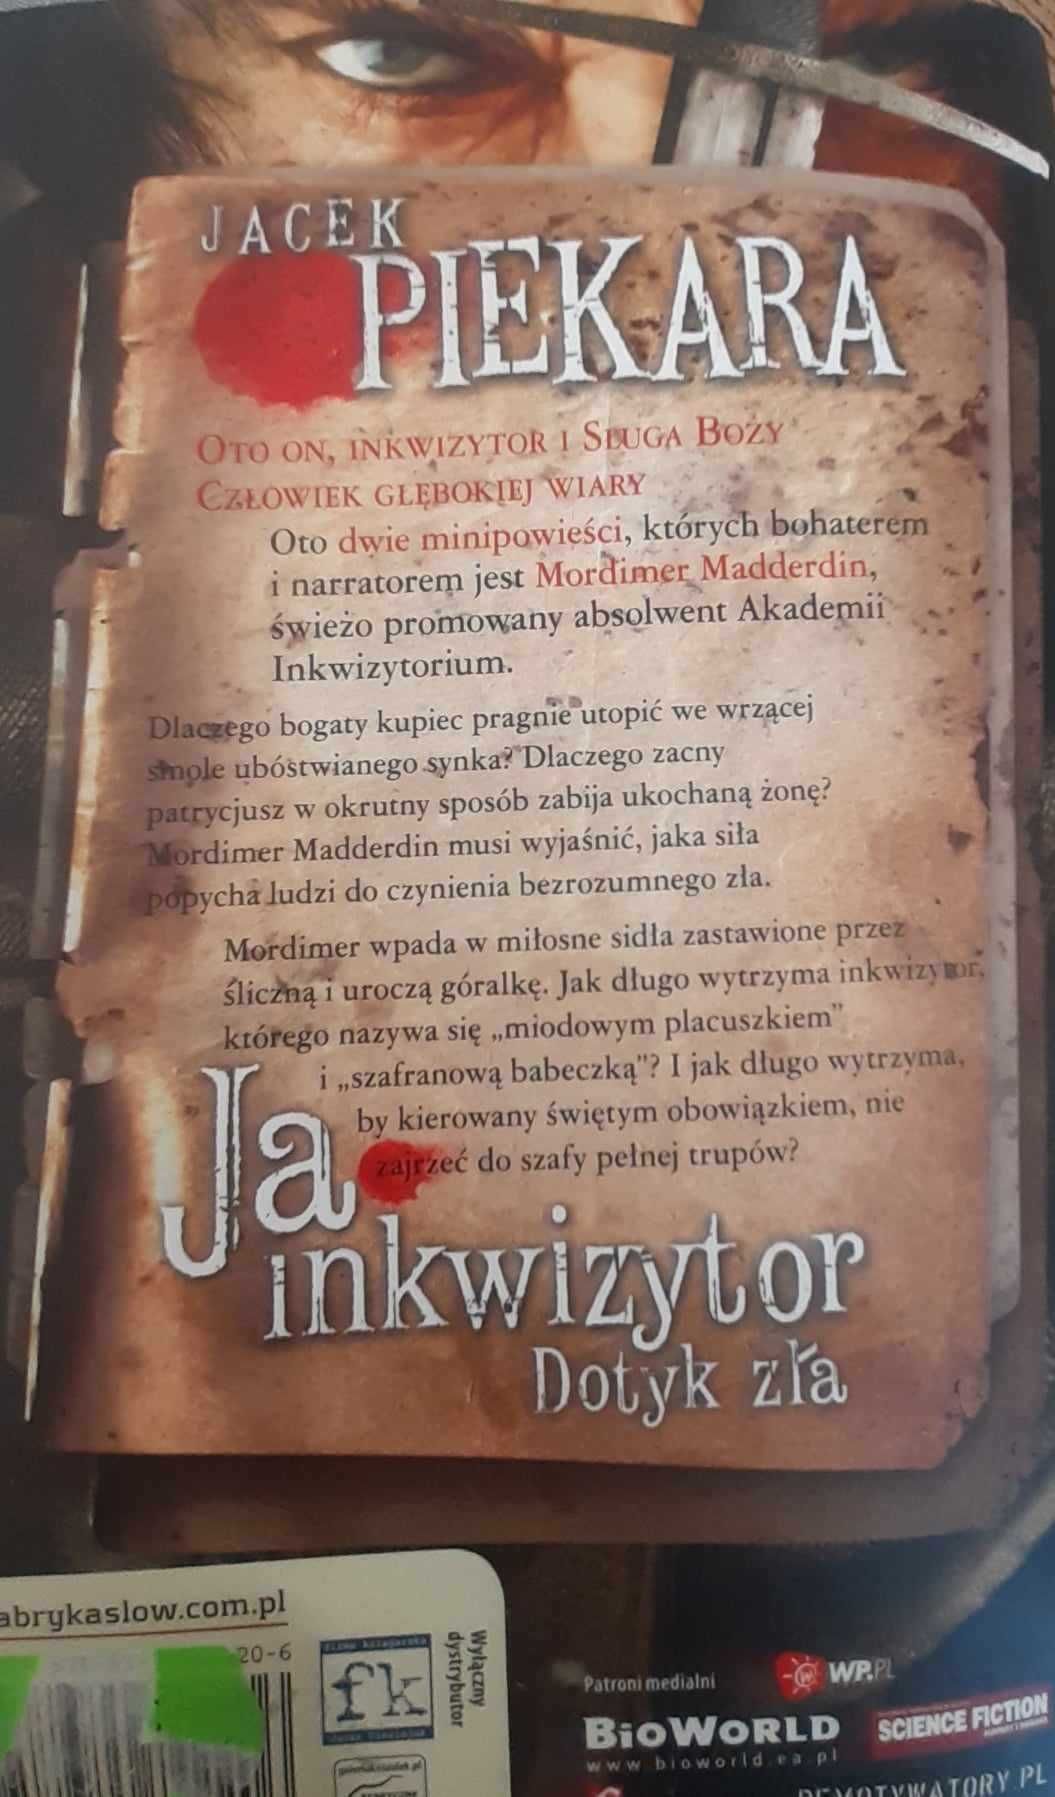 Bestseller polskiej fantastyki "Ja inkwizytor. Dotyk zła" J. Piekary